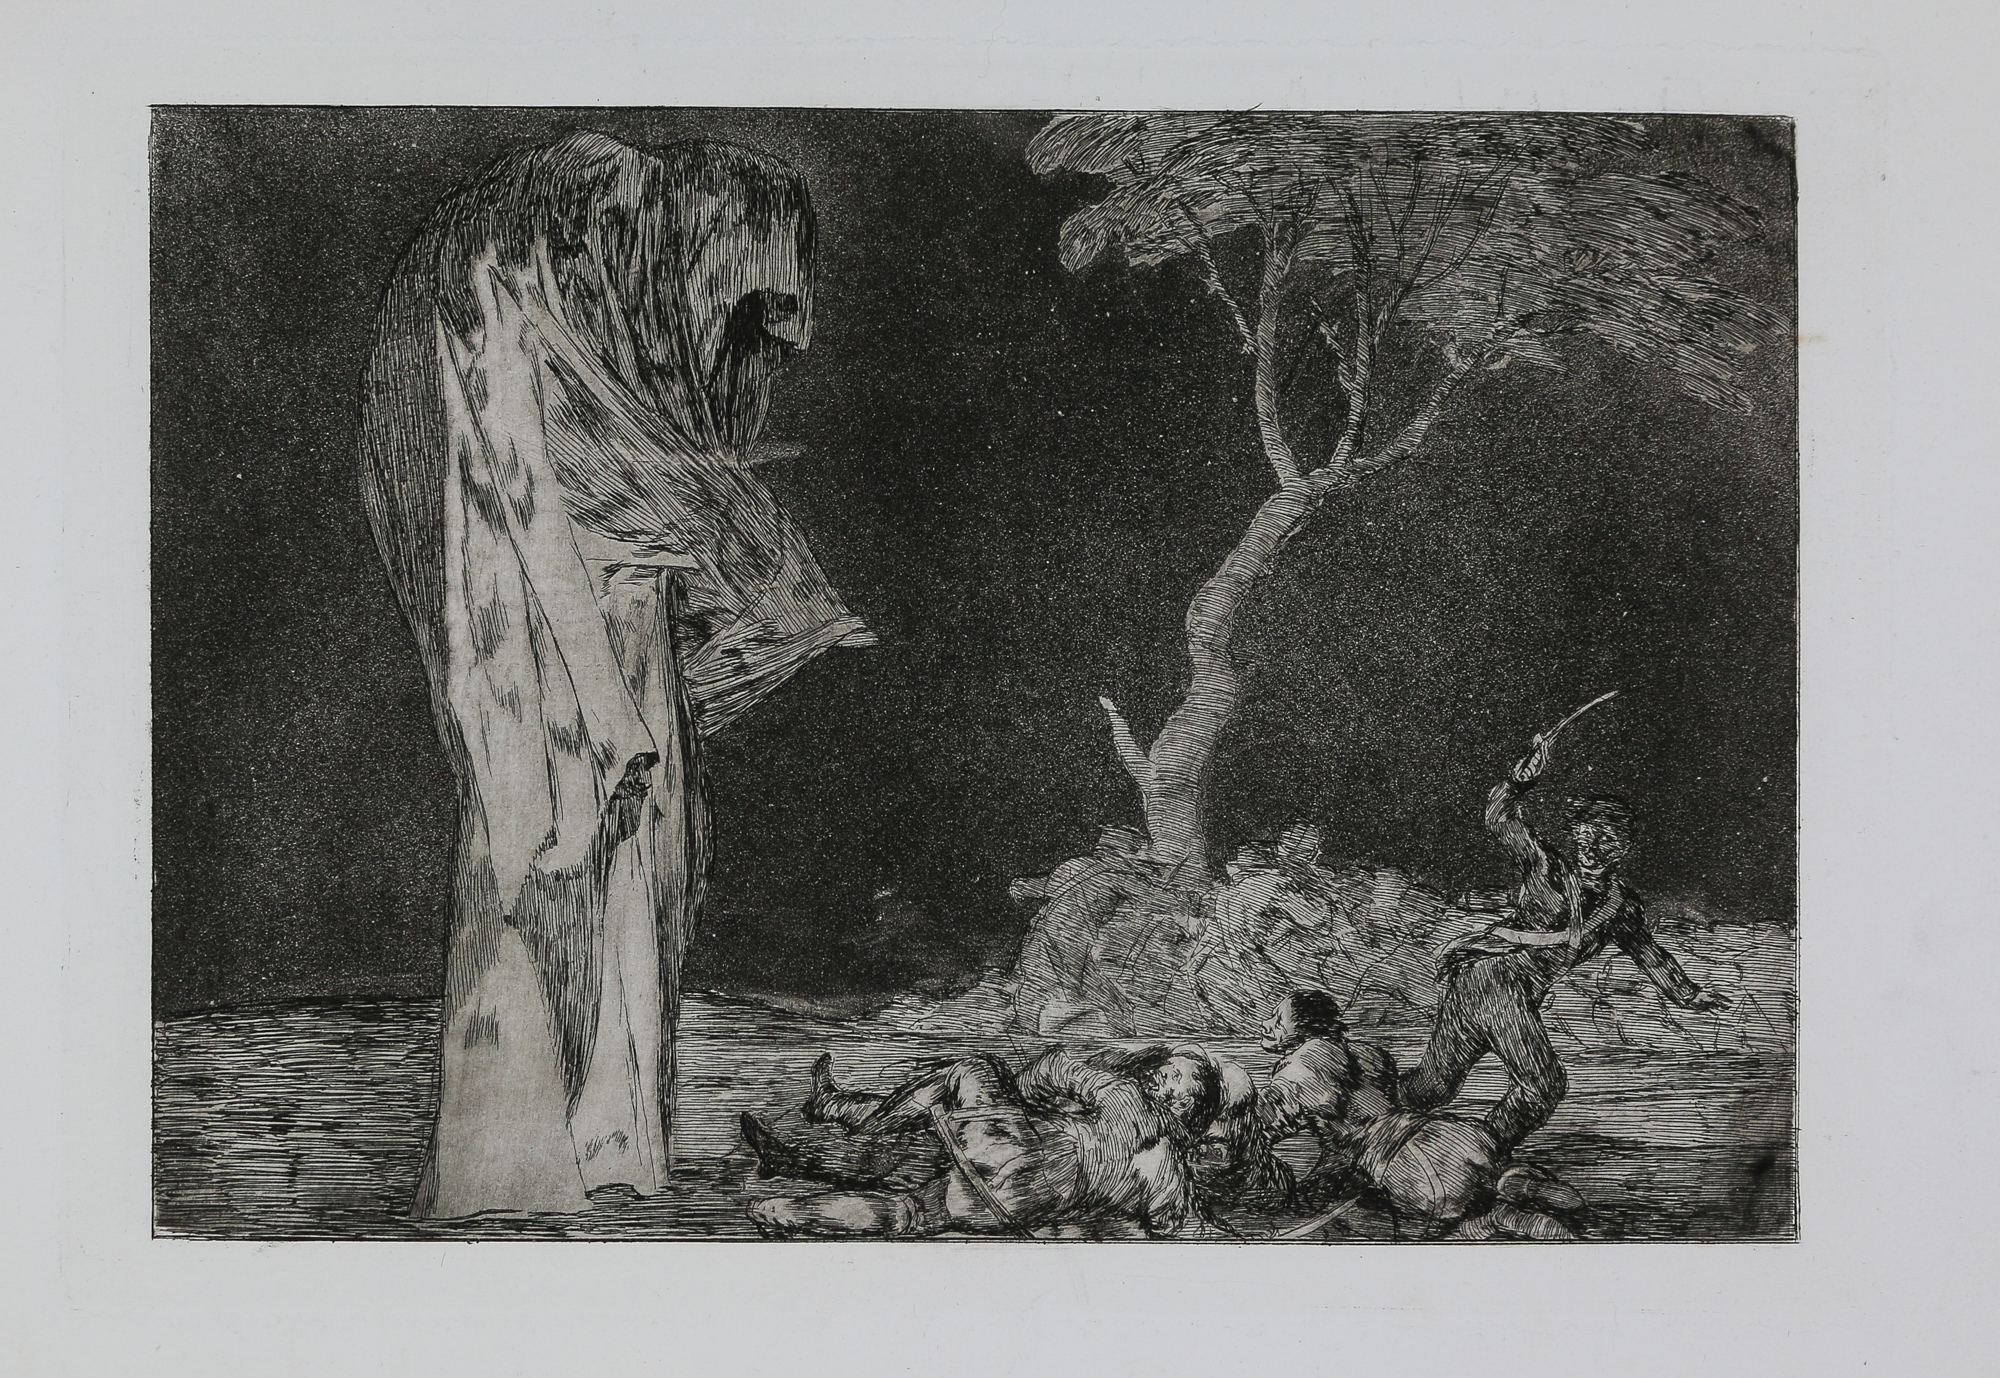 Goya, Disparate de miedo